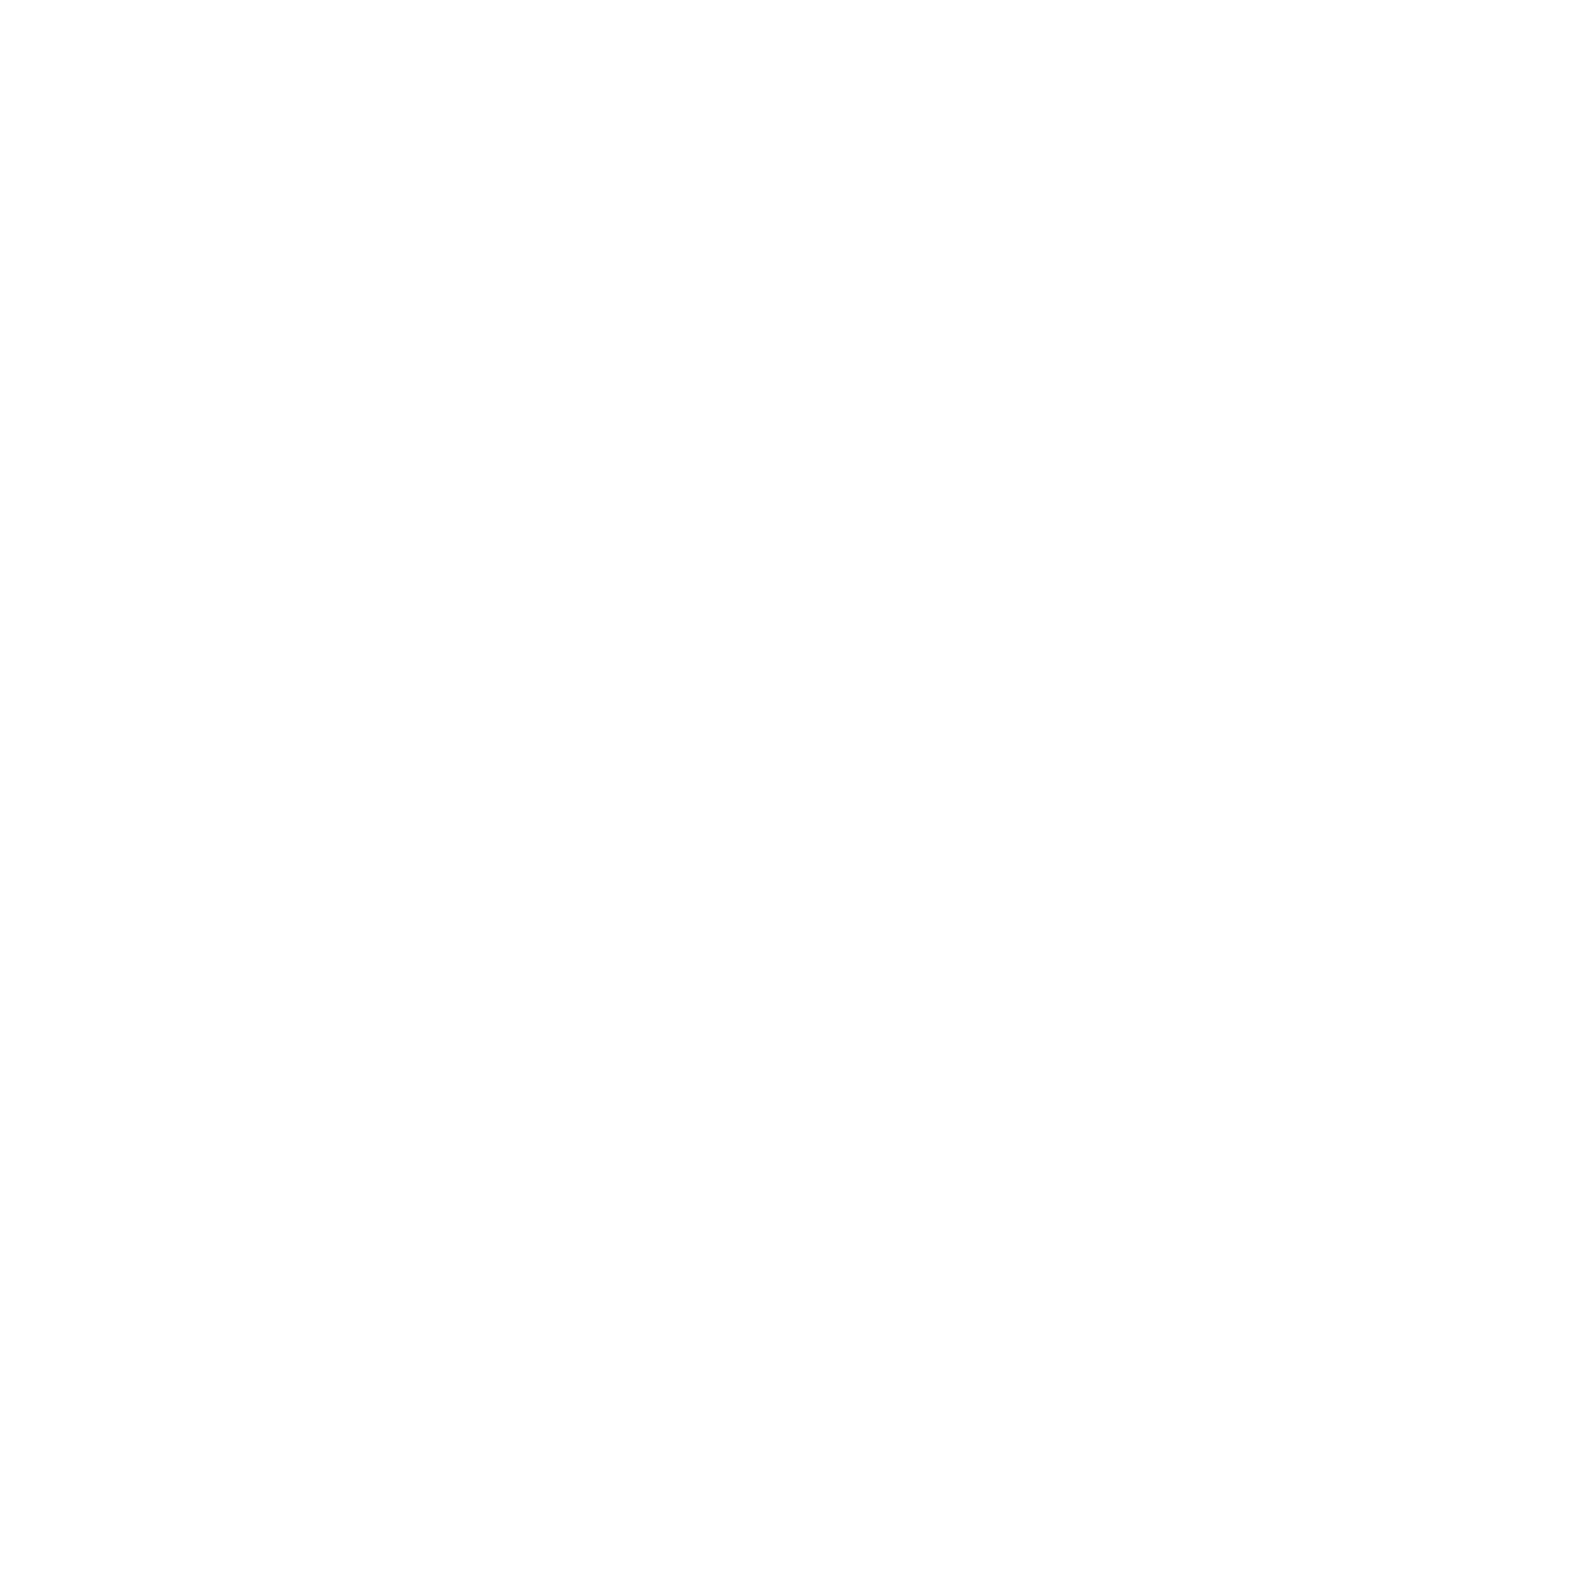 LTIMindtree logo for dark backgrounds (transparent PNG)